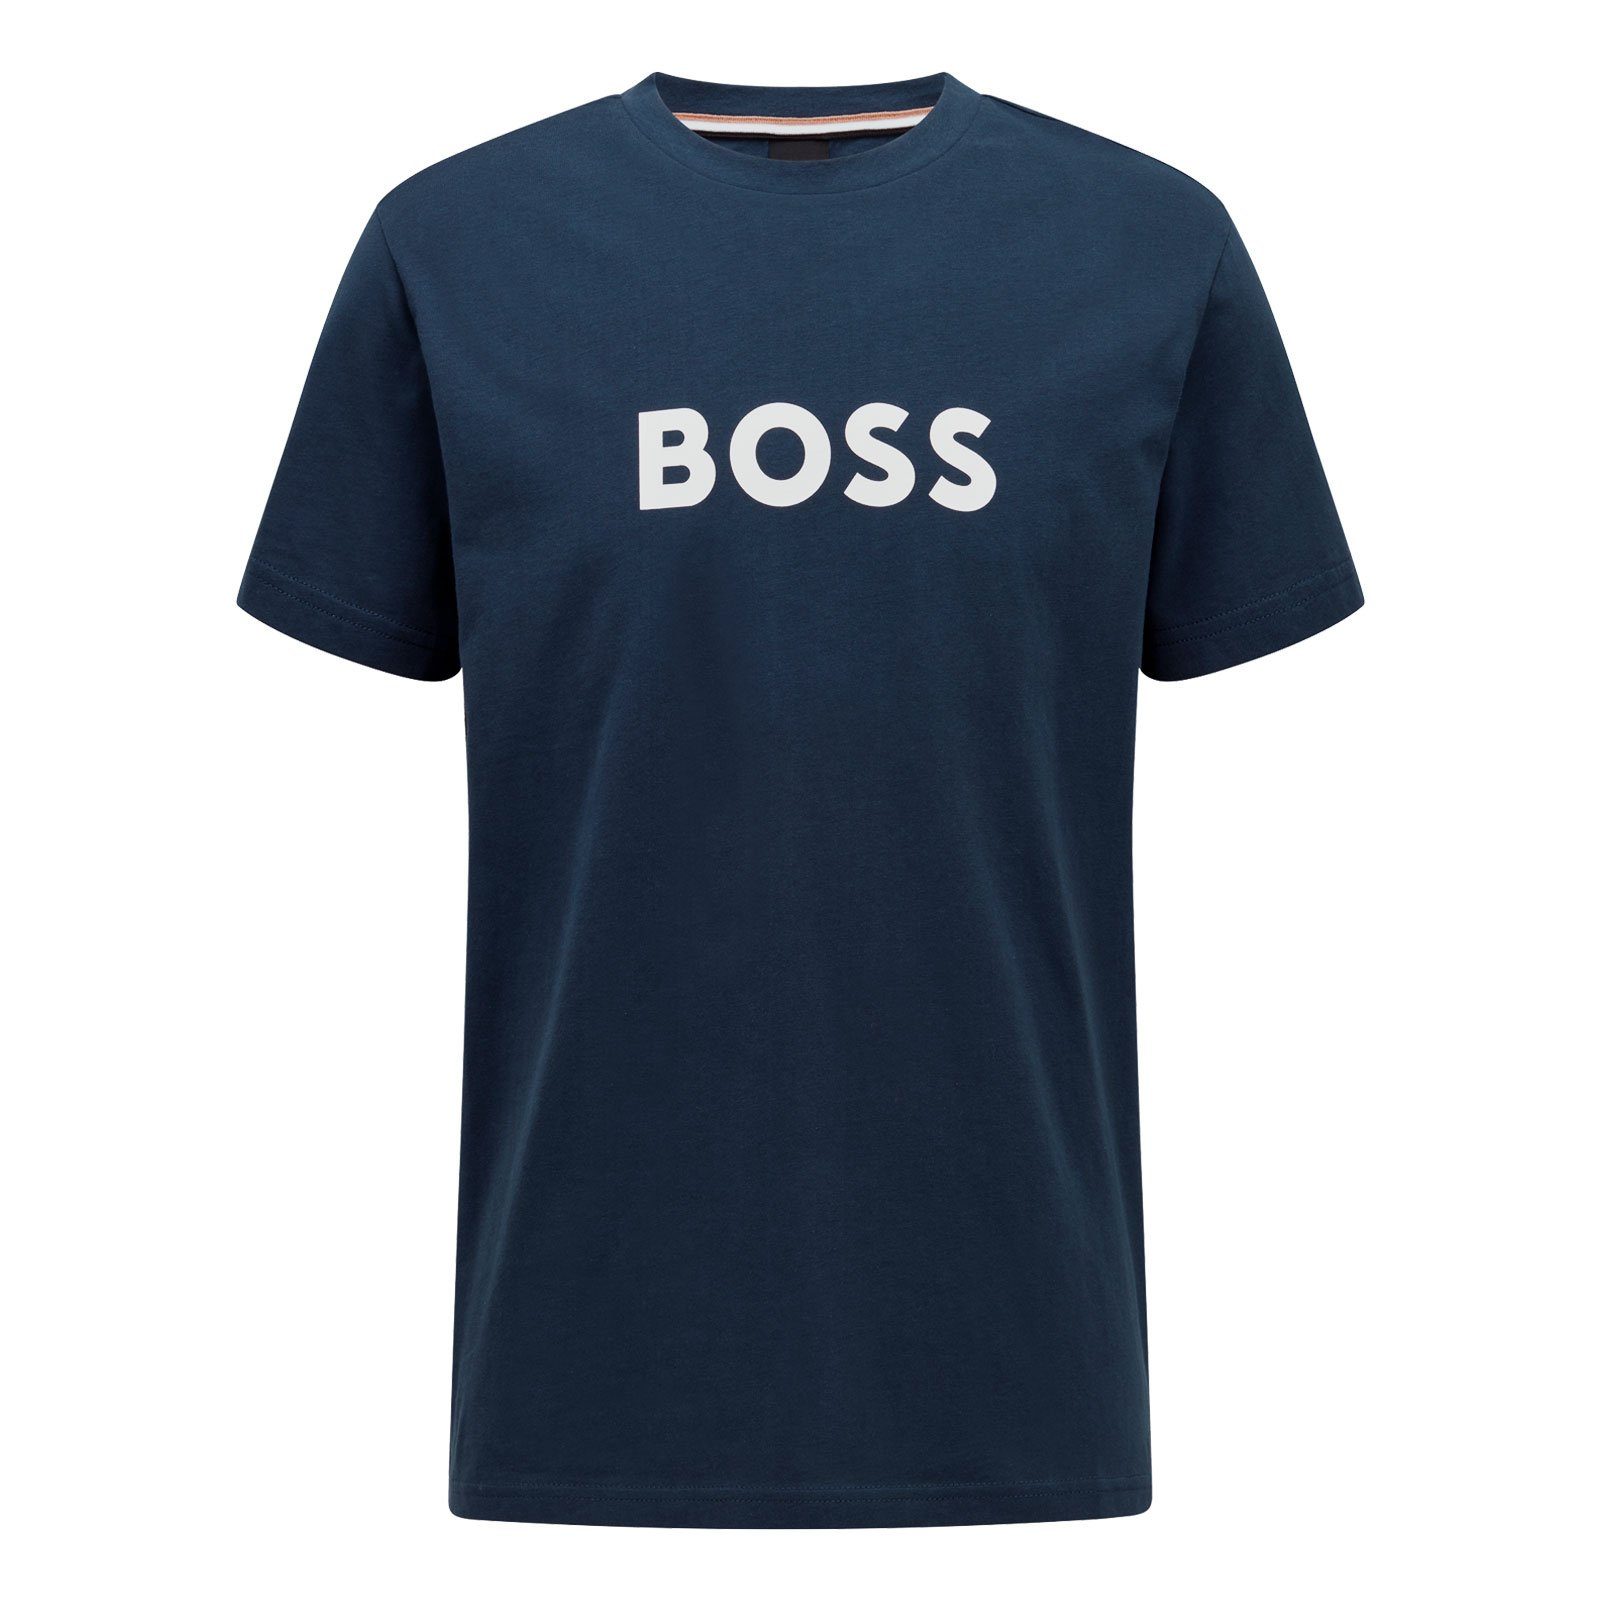 BOSS T-Shirt RN Sun Protection großem Markenprint navy Brust 415 auf mit der